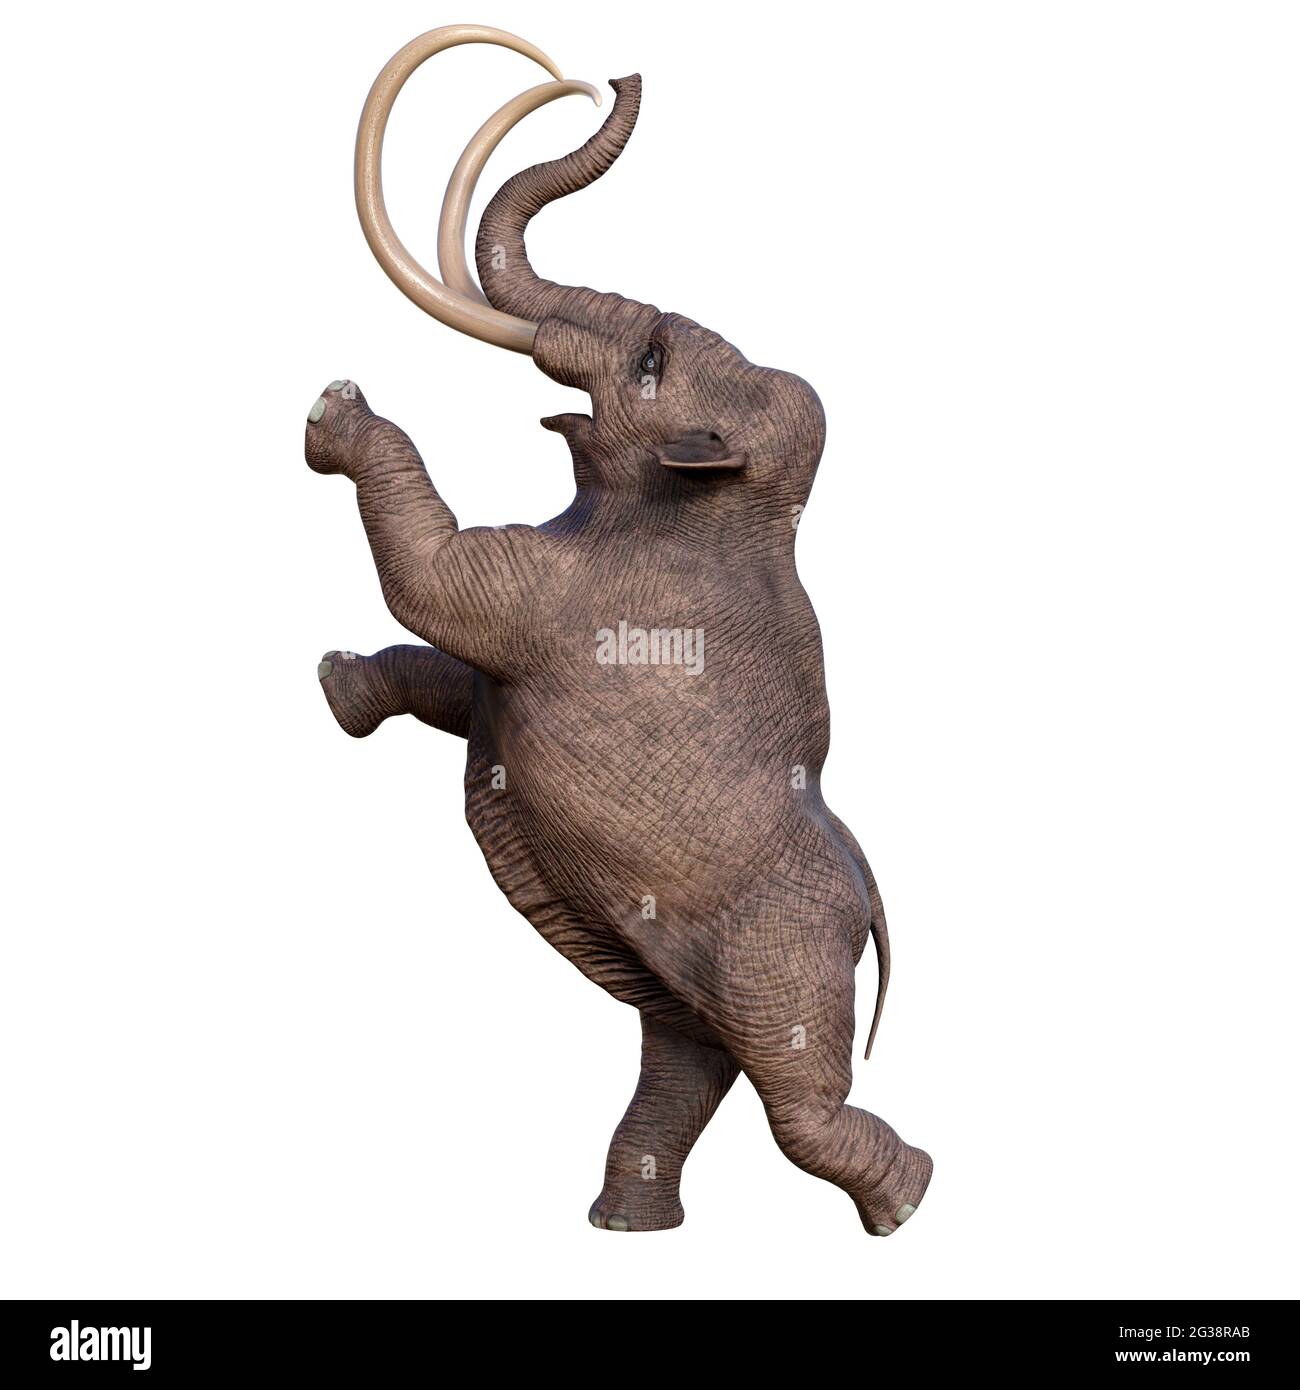 Durante la Edad de Hielo de América del Norte, la Mamut colombiana fue la megafauna del continente. Foto de stock